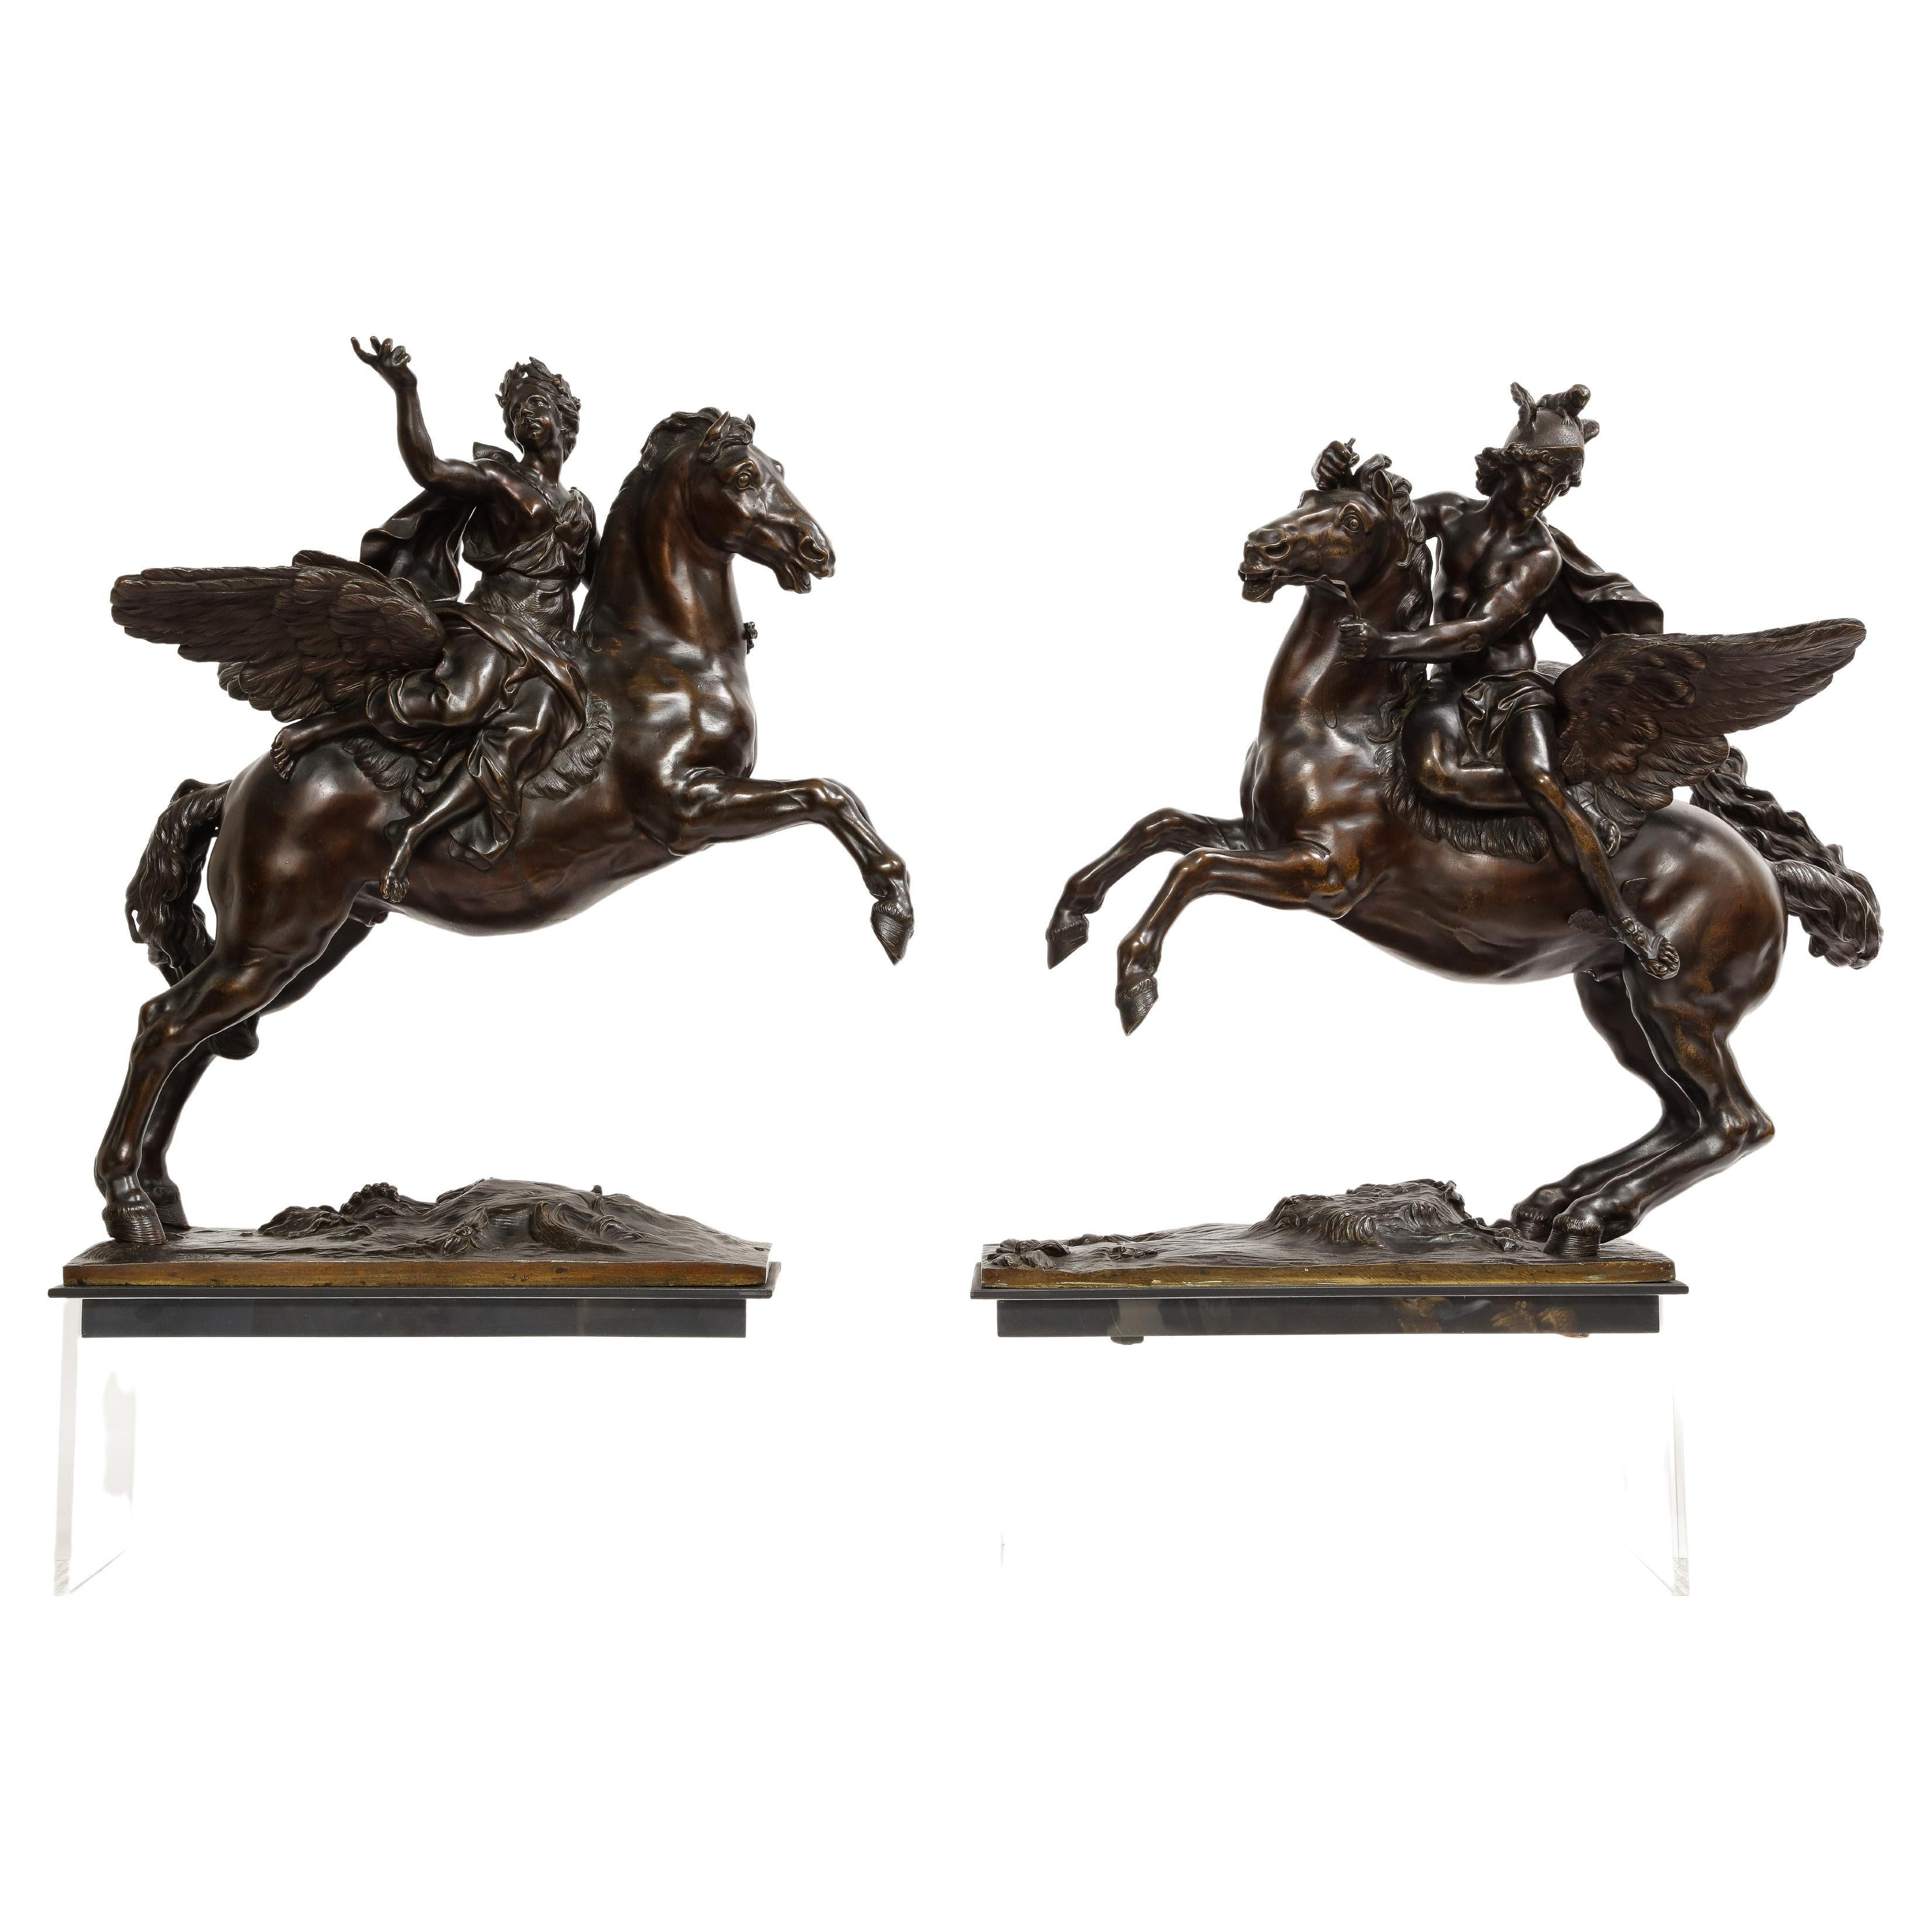 Pr. Französische Bronzegruppen Ruhm und Merkur aus dem 19. Jahrhundert nach Modellen von Antoine Coysevox